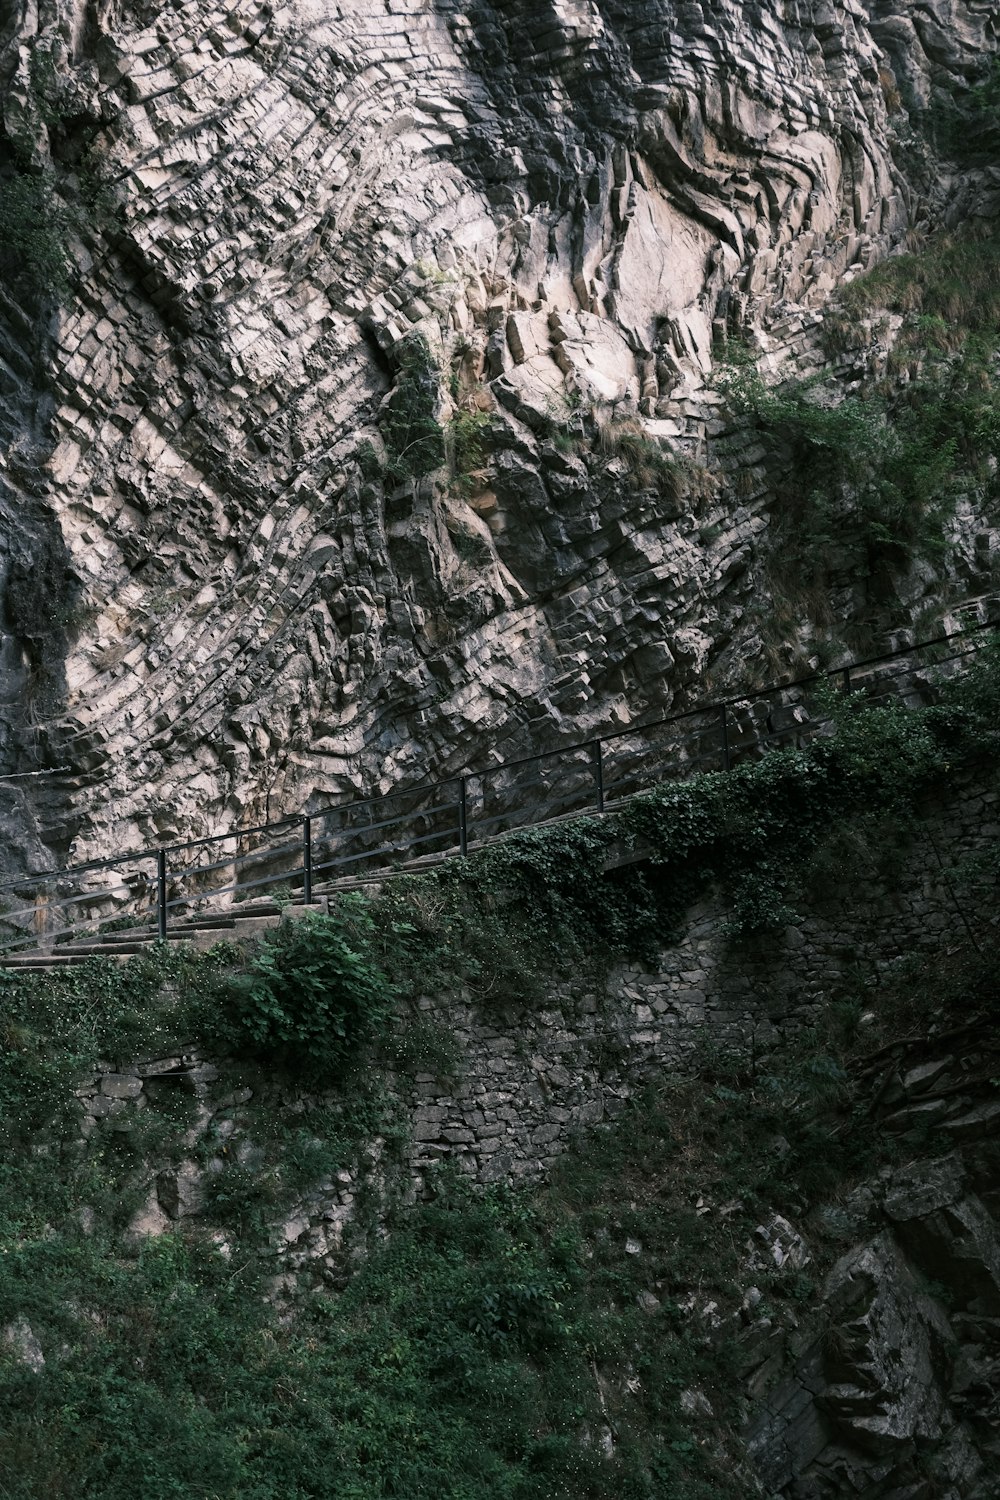 a bridge over a rocky cliff